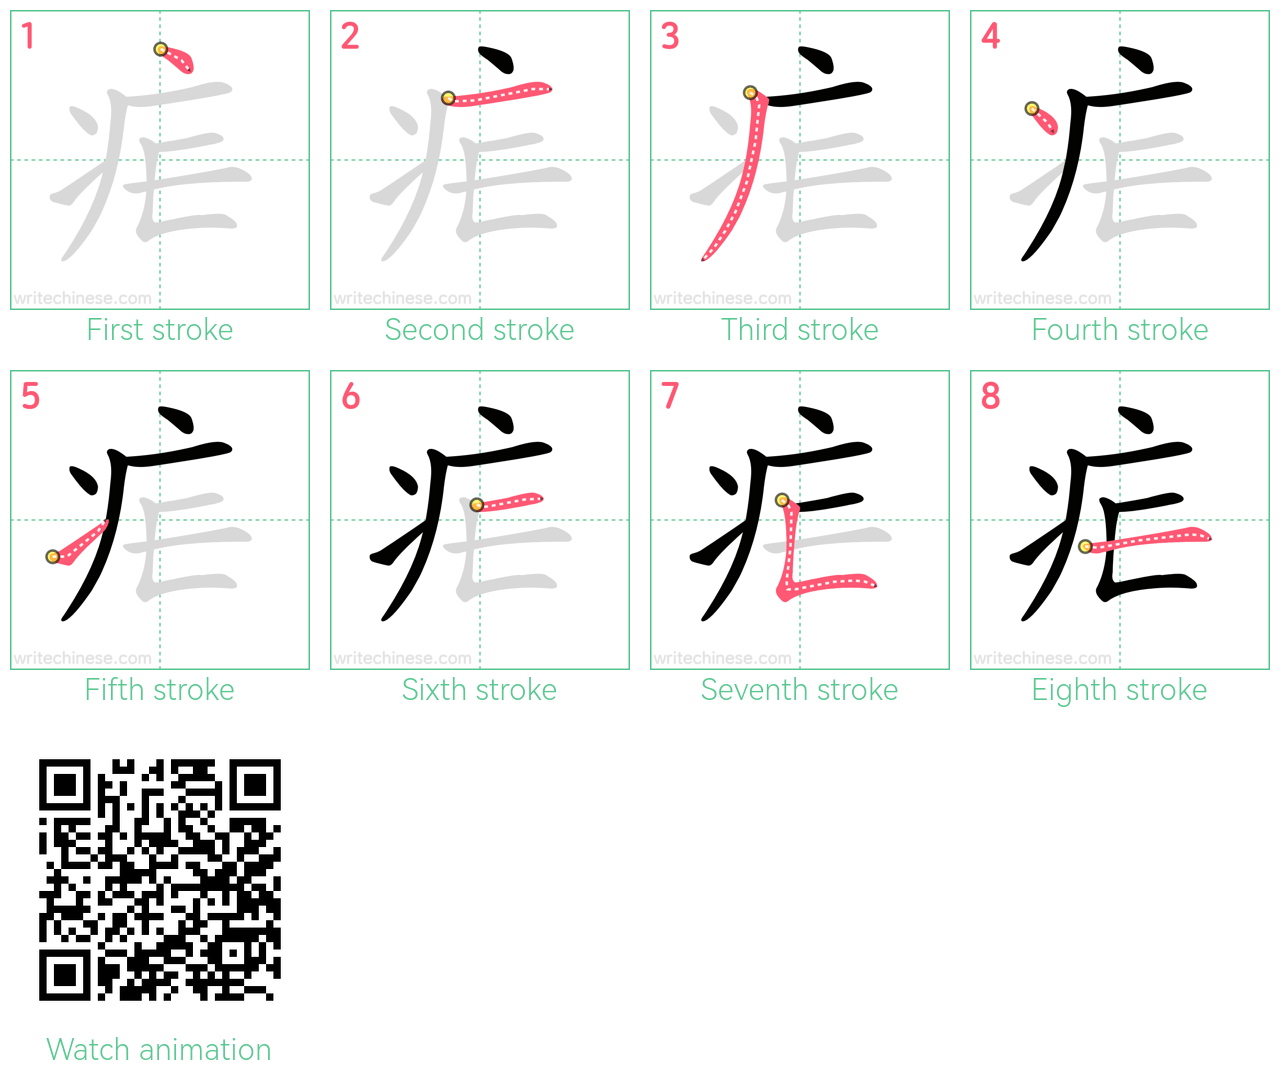 疟 step-by-step stroke order diagrams